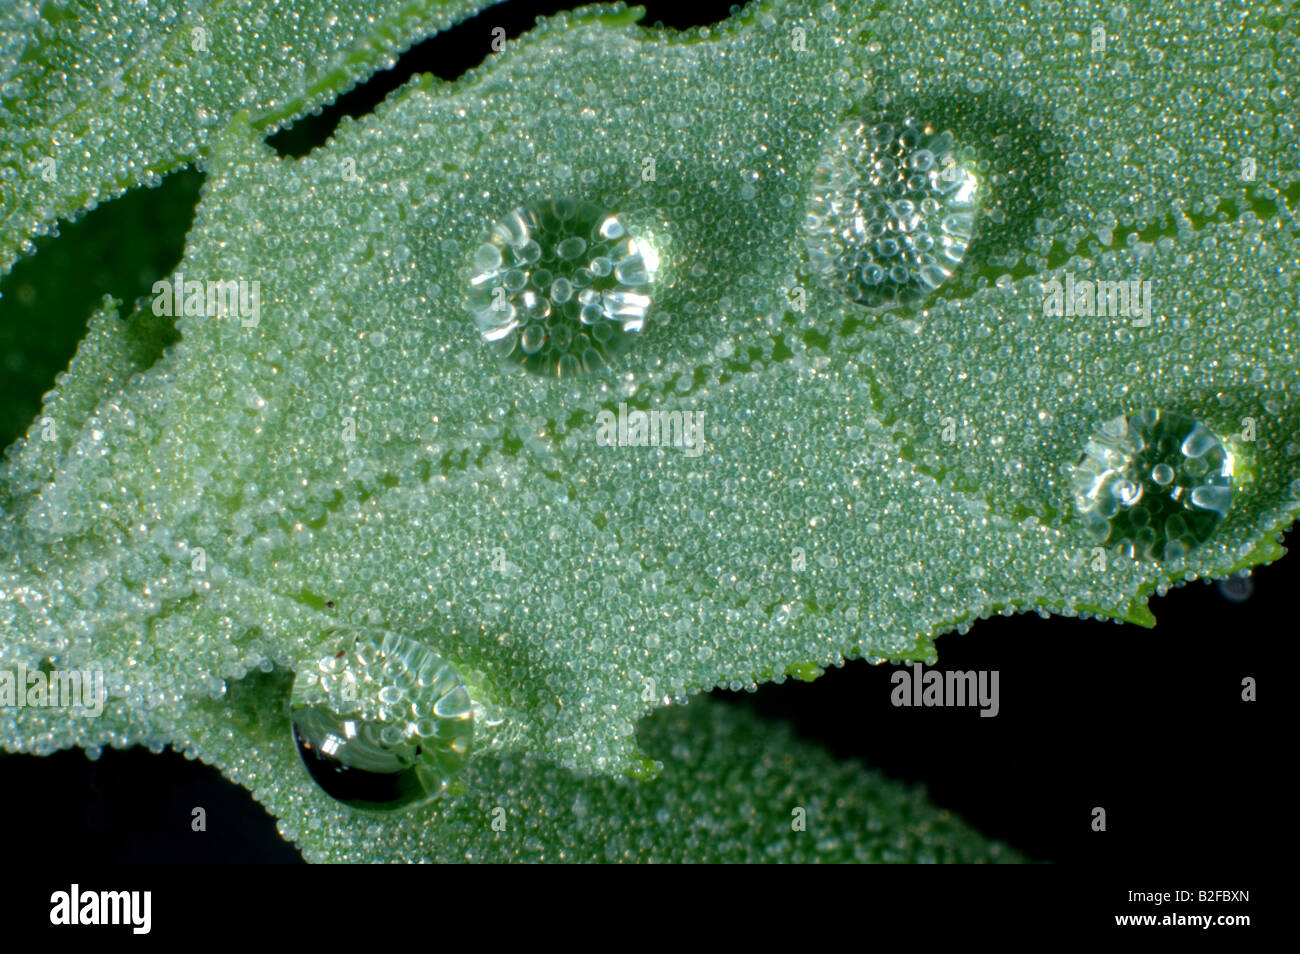 Giovane foglia di materia grassa hen Chenopodium album con goccioline di acqua respinti dalle vescicole ceroso Foto Stock